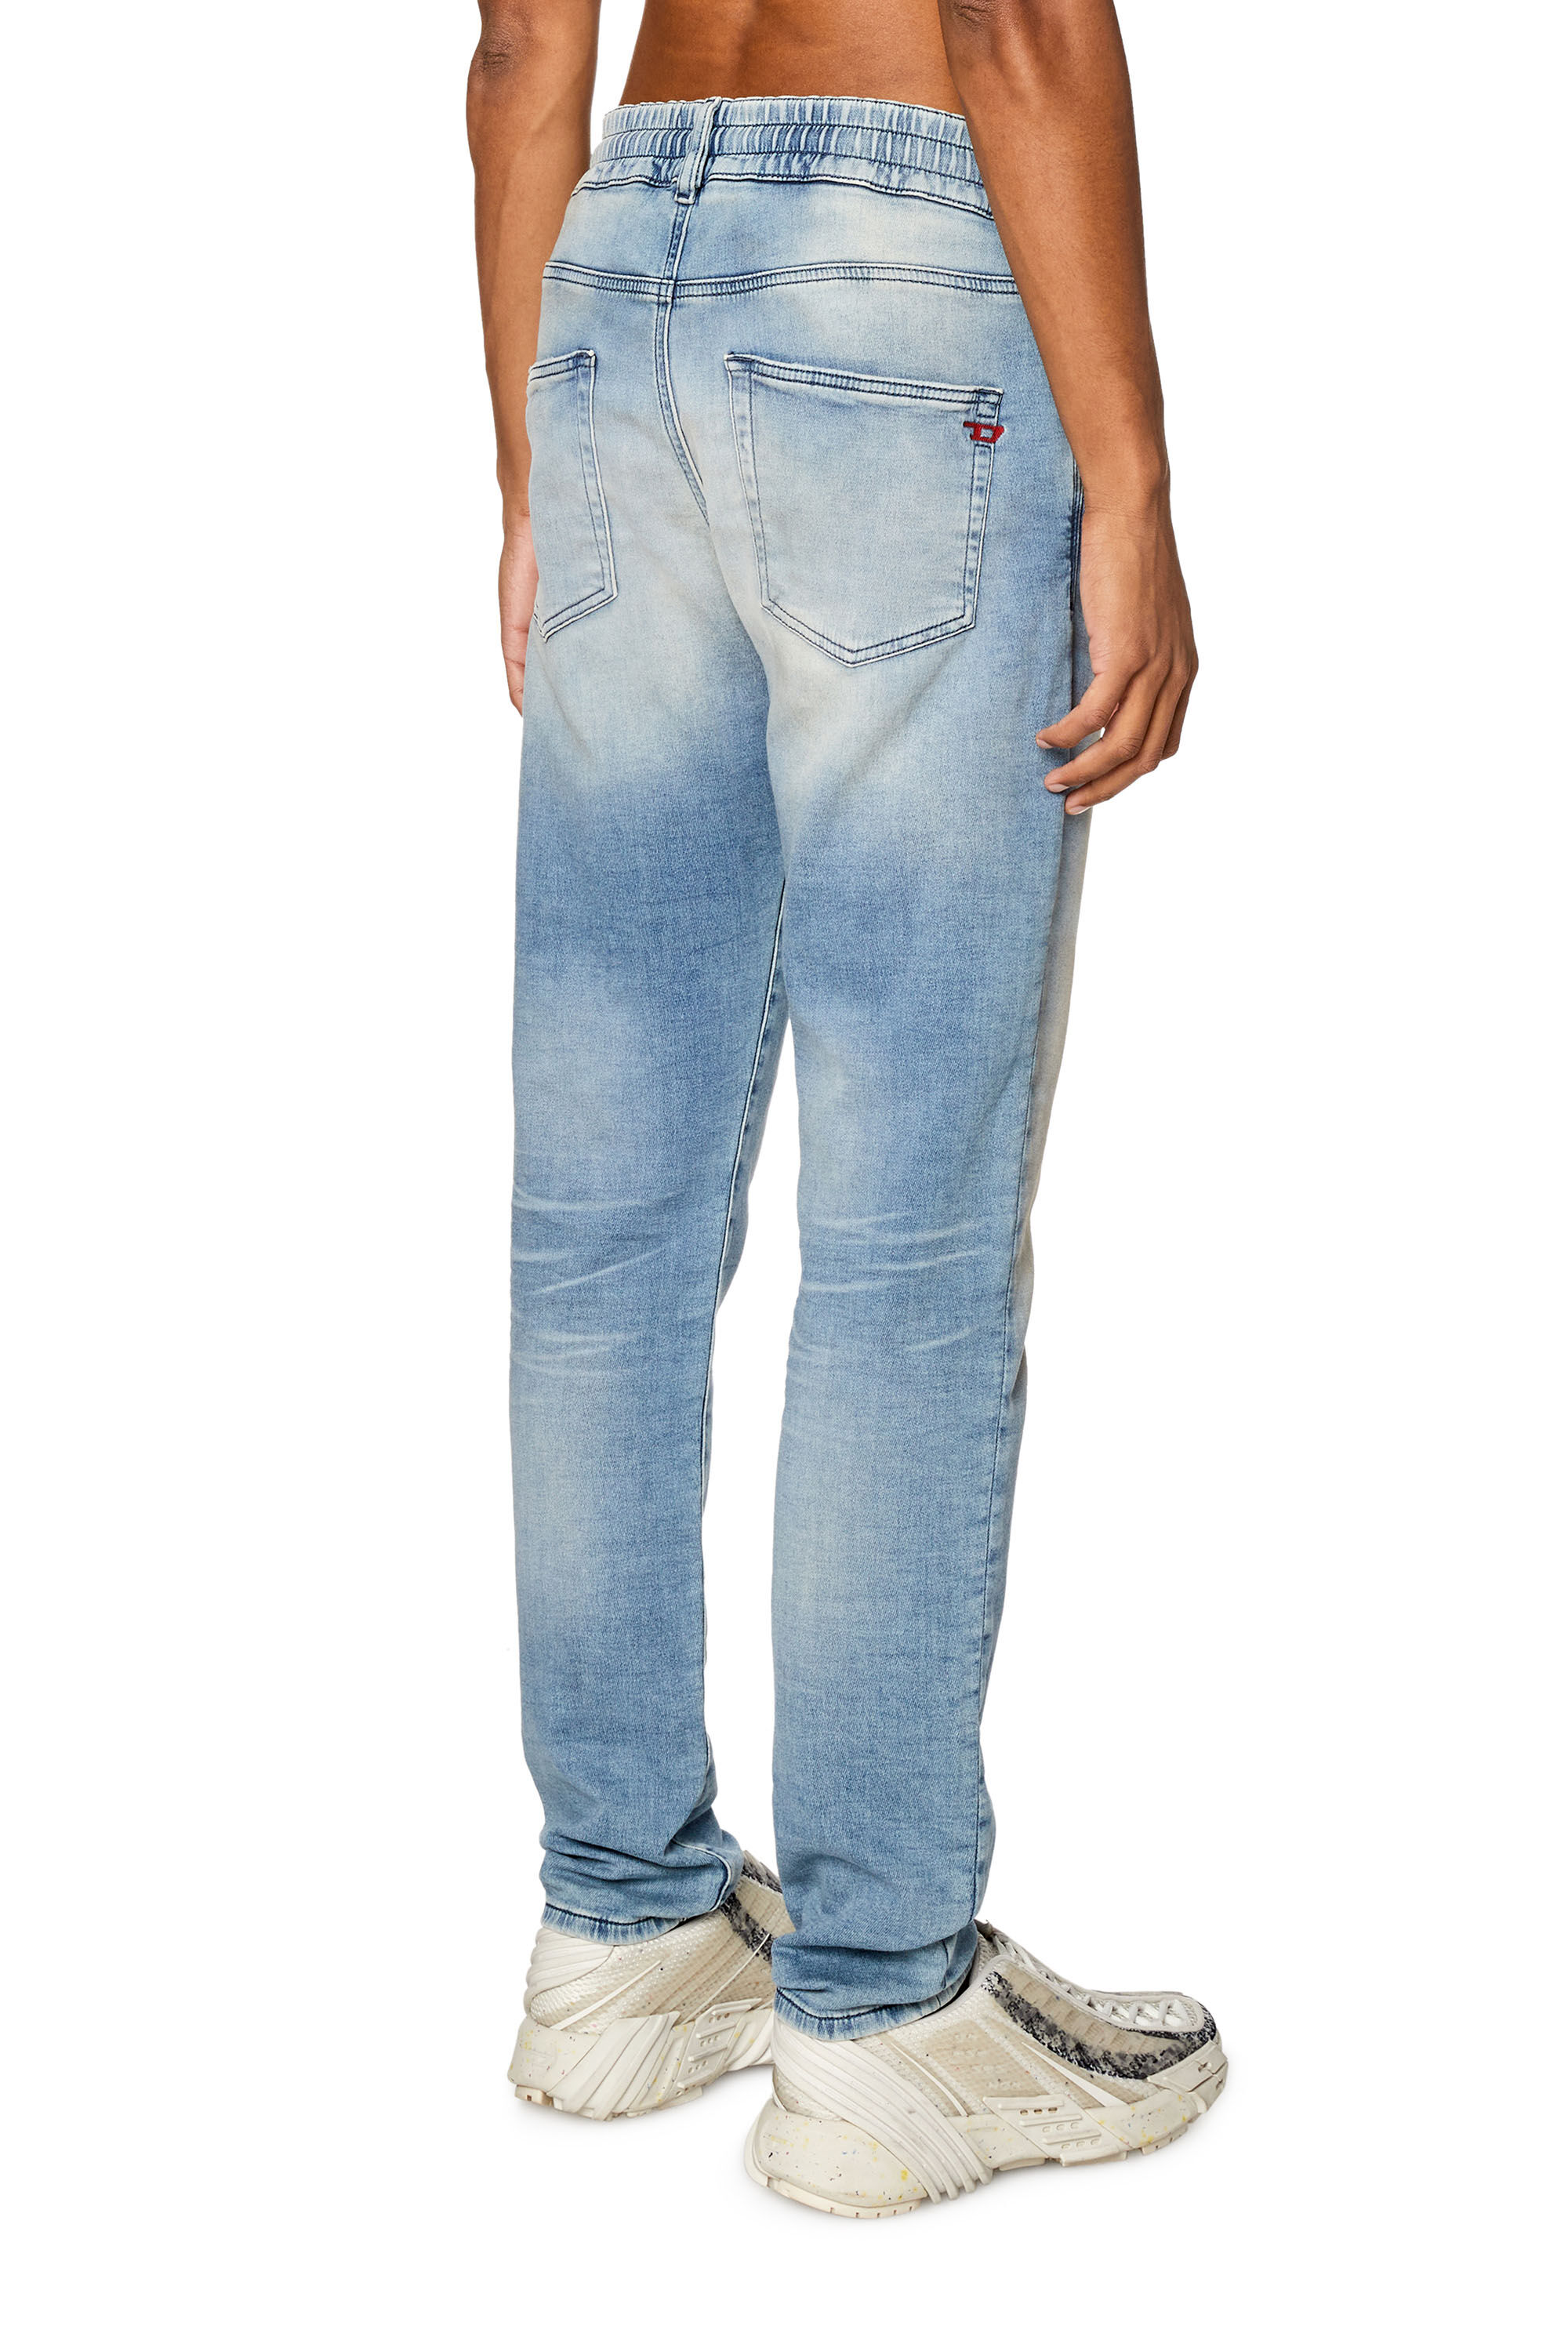 Men's Slim Jeans | Light blue | Diesel 2060 D-Strukt Joggjeans®